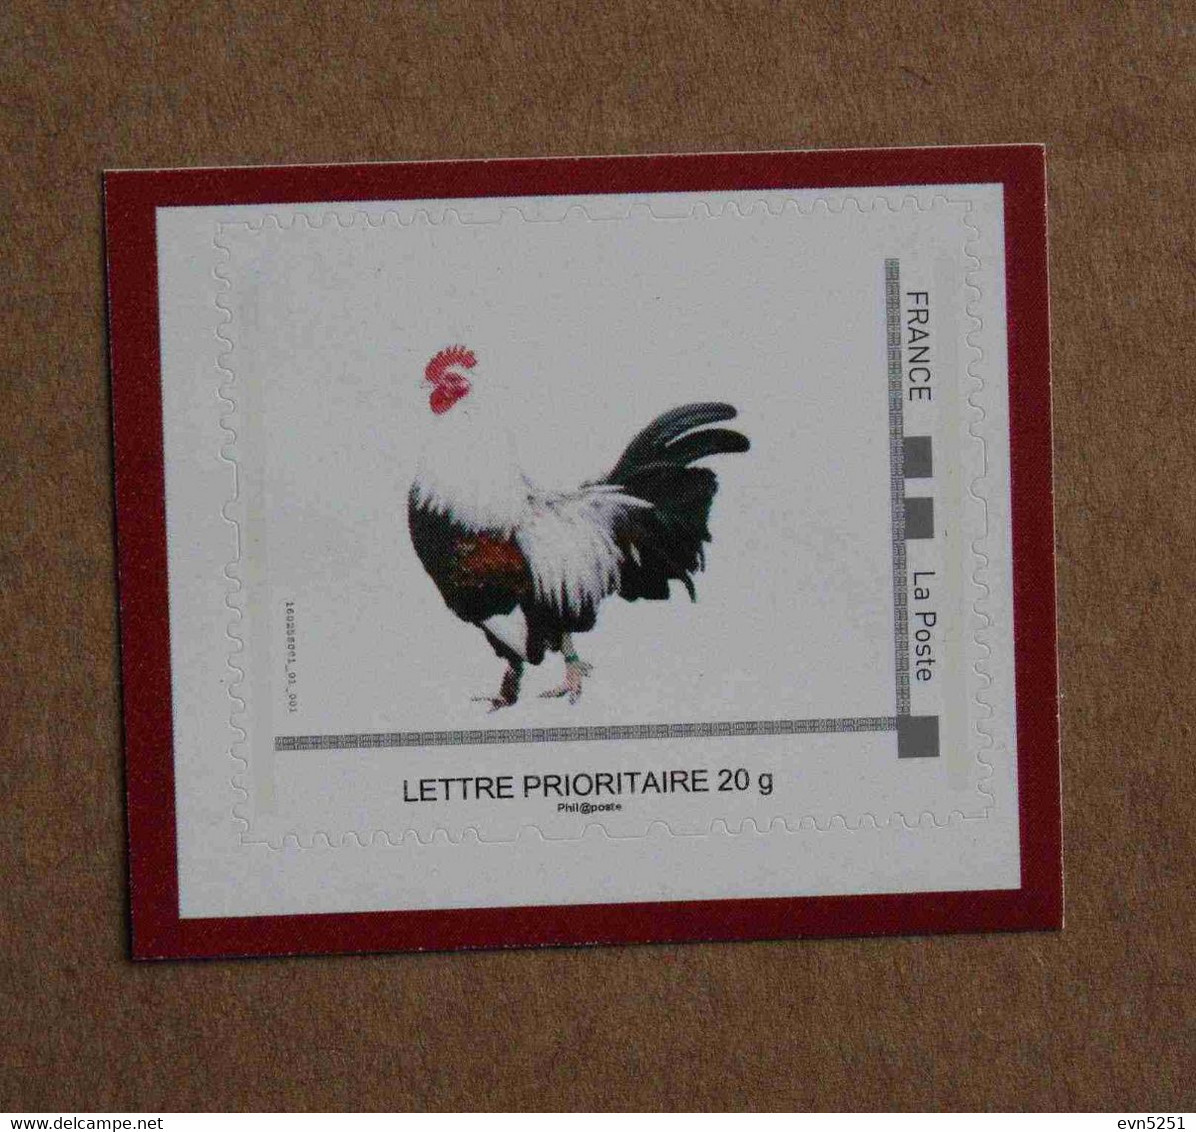 P3-B1 : Salon De L'Agriculture 2016 -Timbre émis Par Phil@poste, Coq (autocollant / Autoadhésif) - Unused Stamps